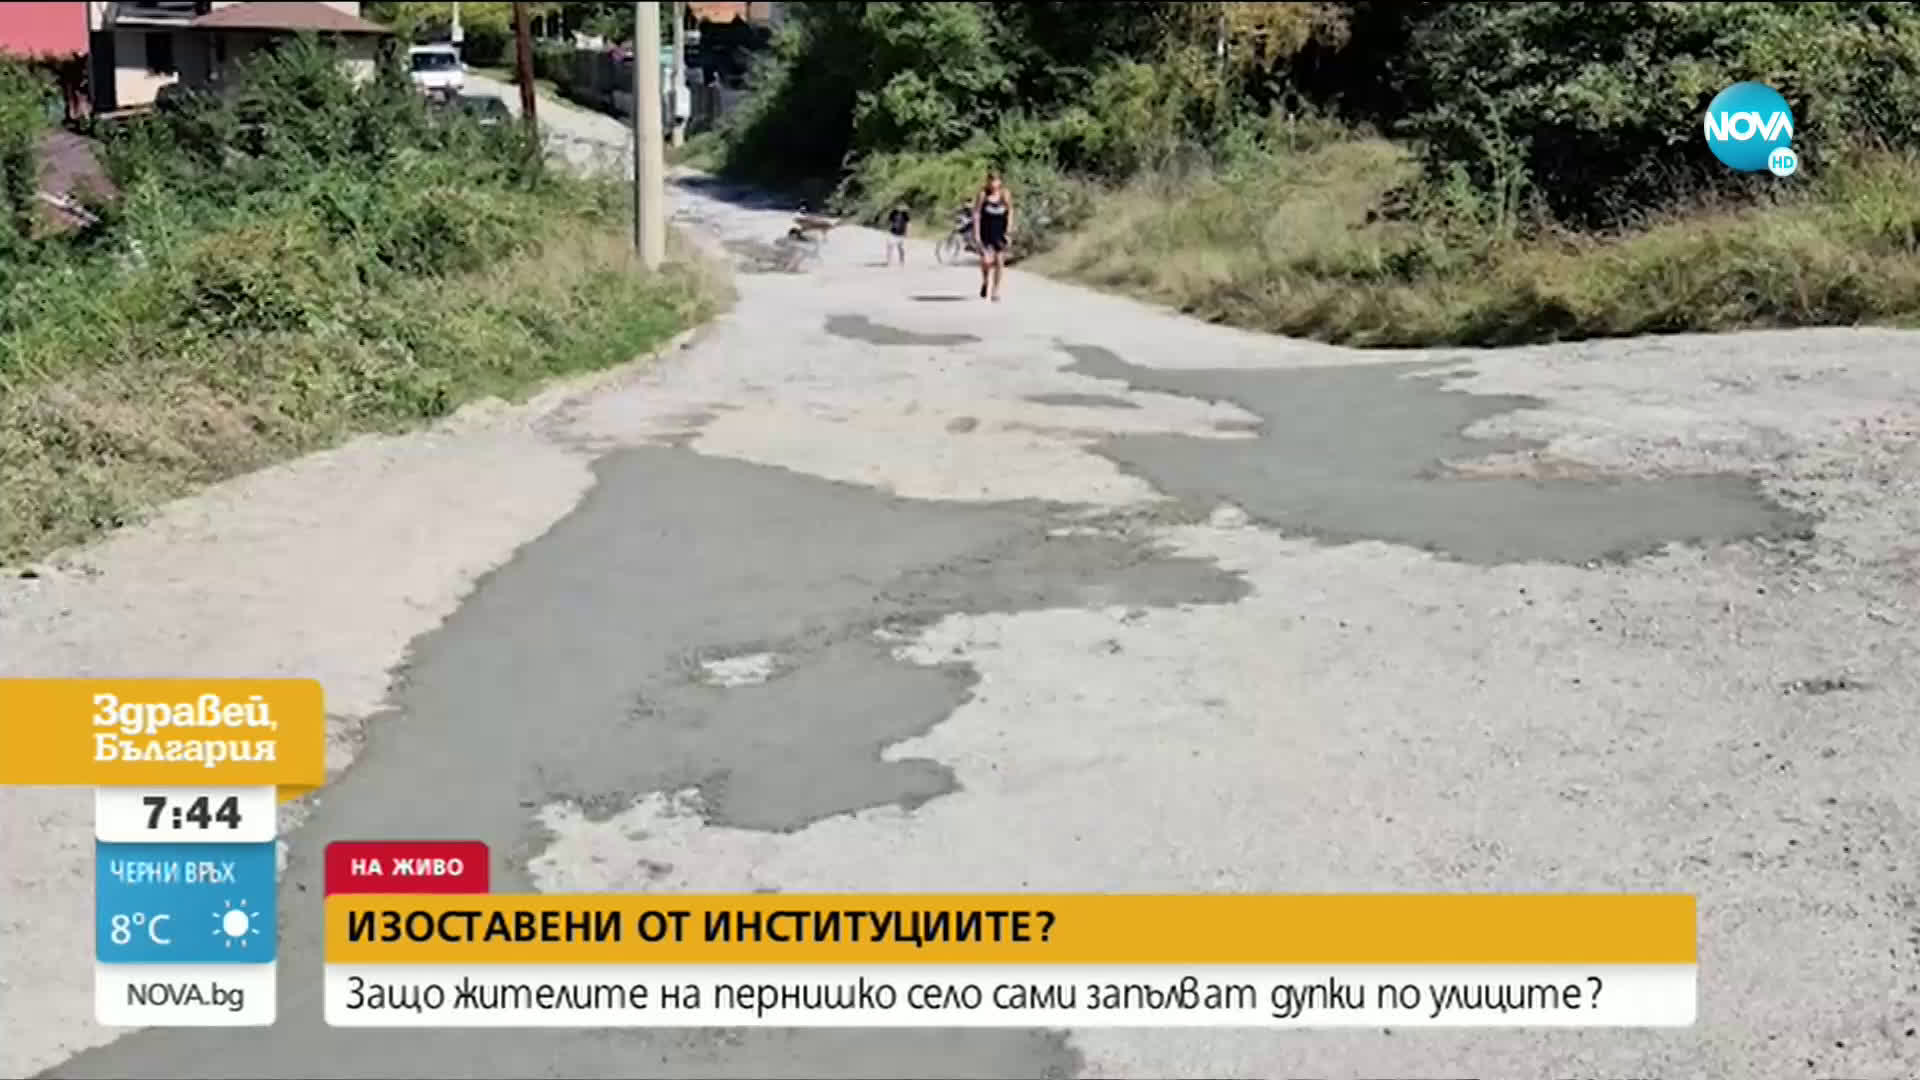 Защо жителите на пернишко село сами запълват дупки по улиците?